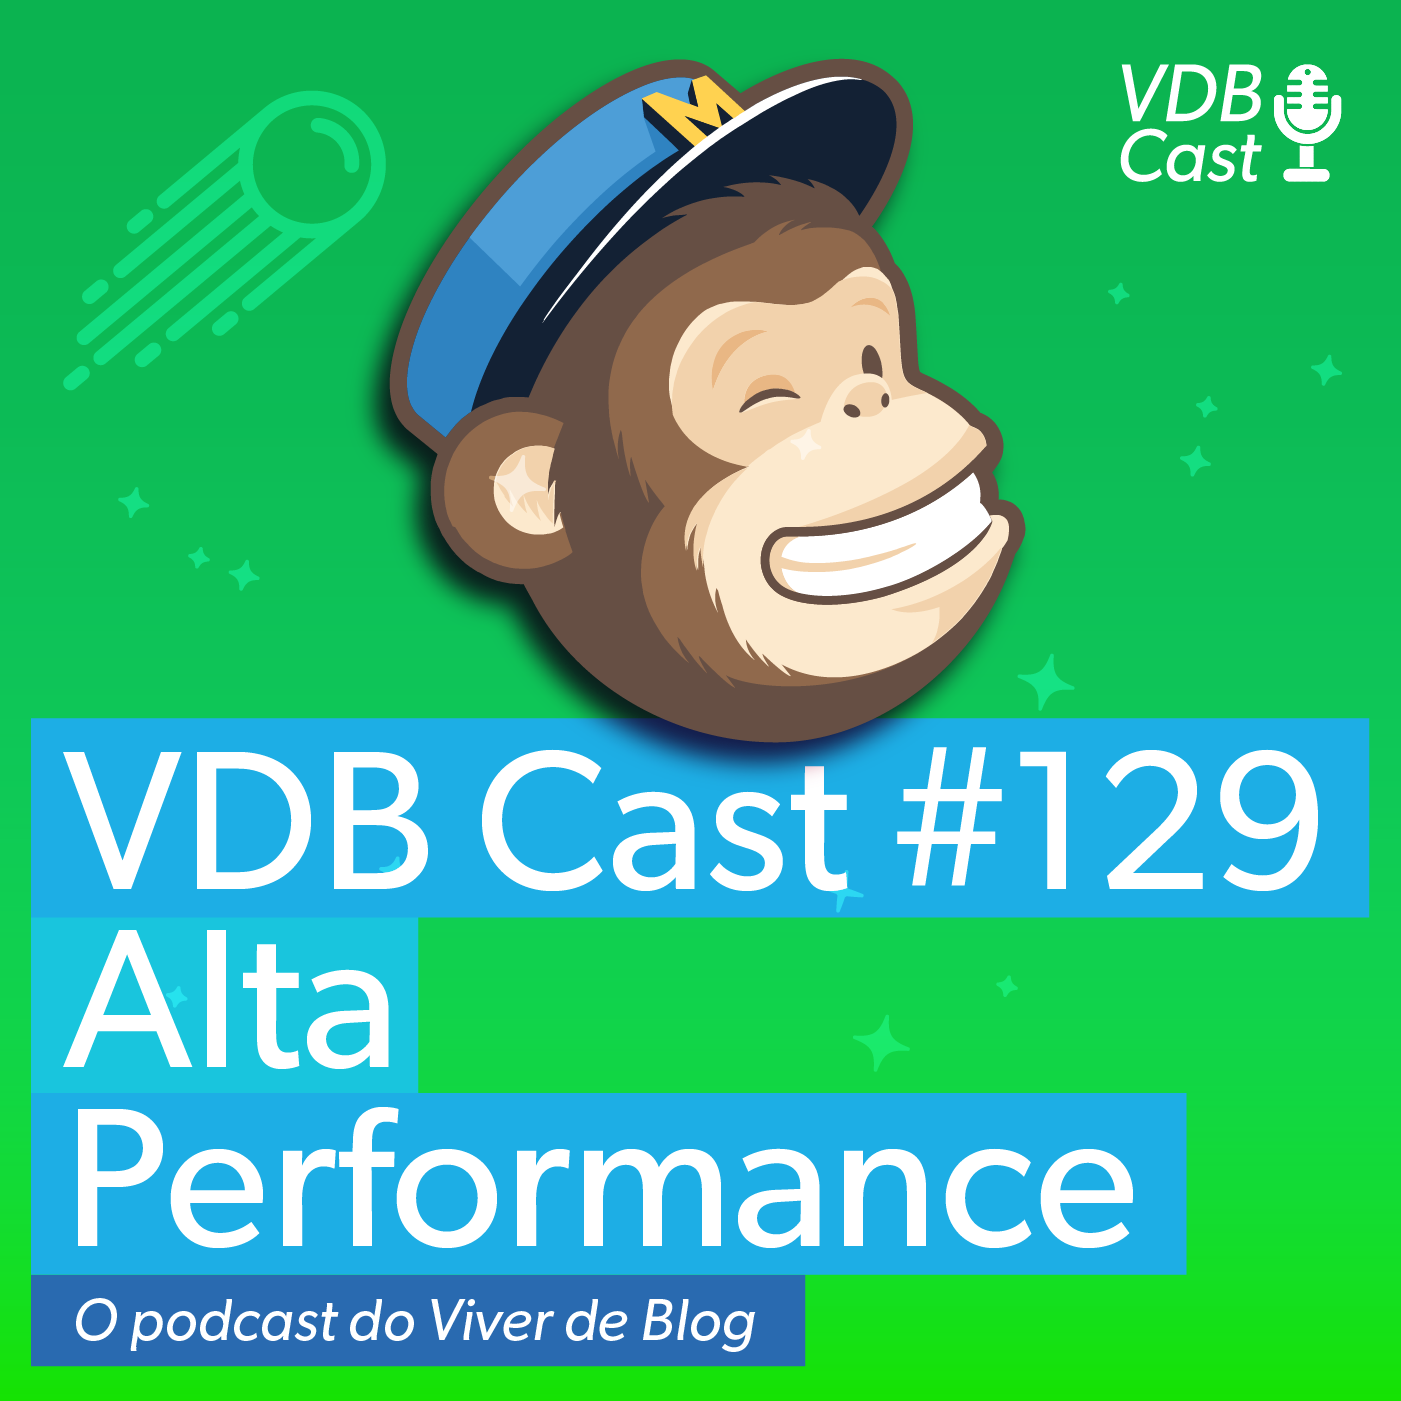 VDB Cast 129 - MailChimp #8 - Os segredos de uma lista de alta performance